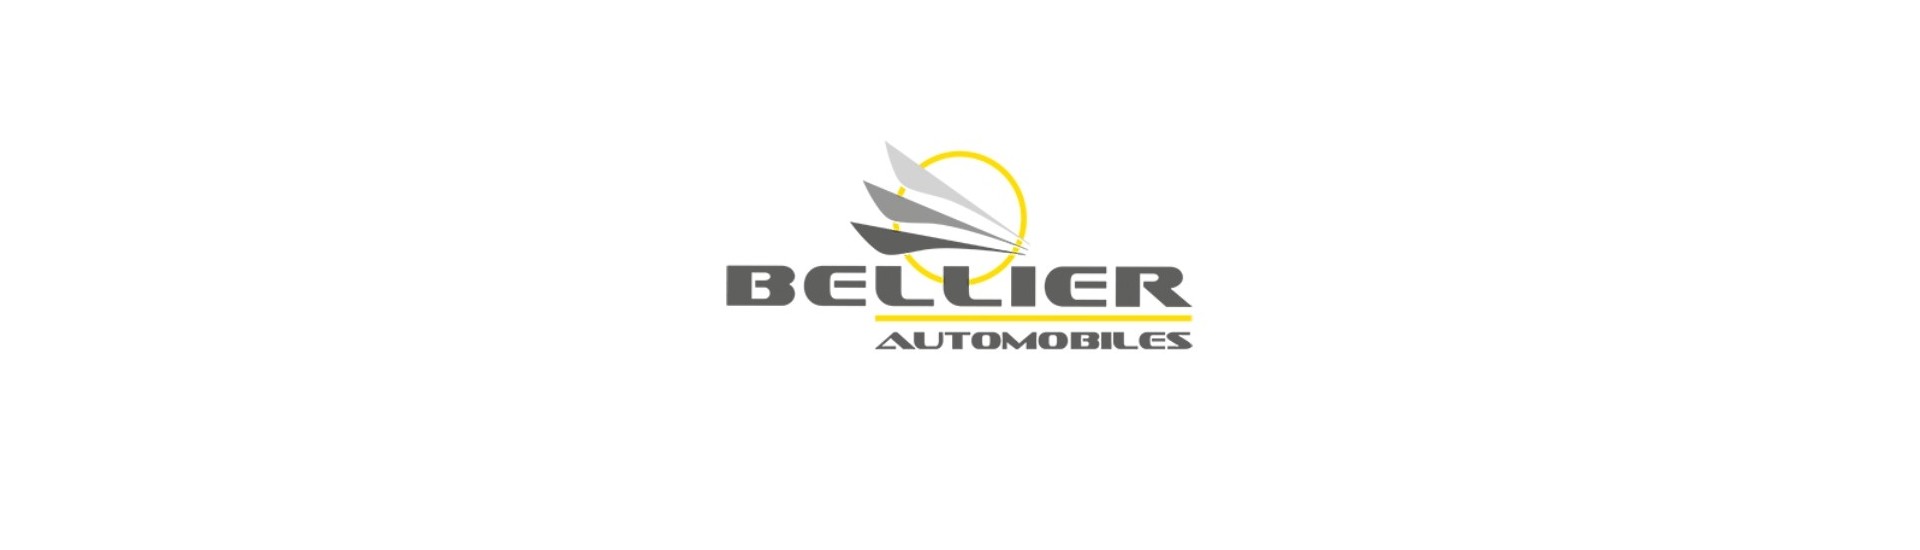 Cablu accelerator la cel mai bun preț pentru mașină fără permis Bellier